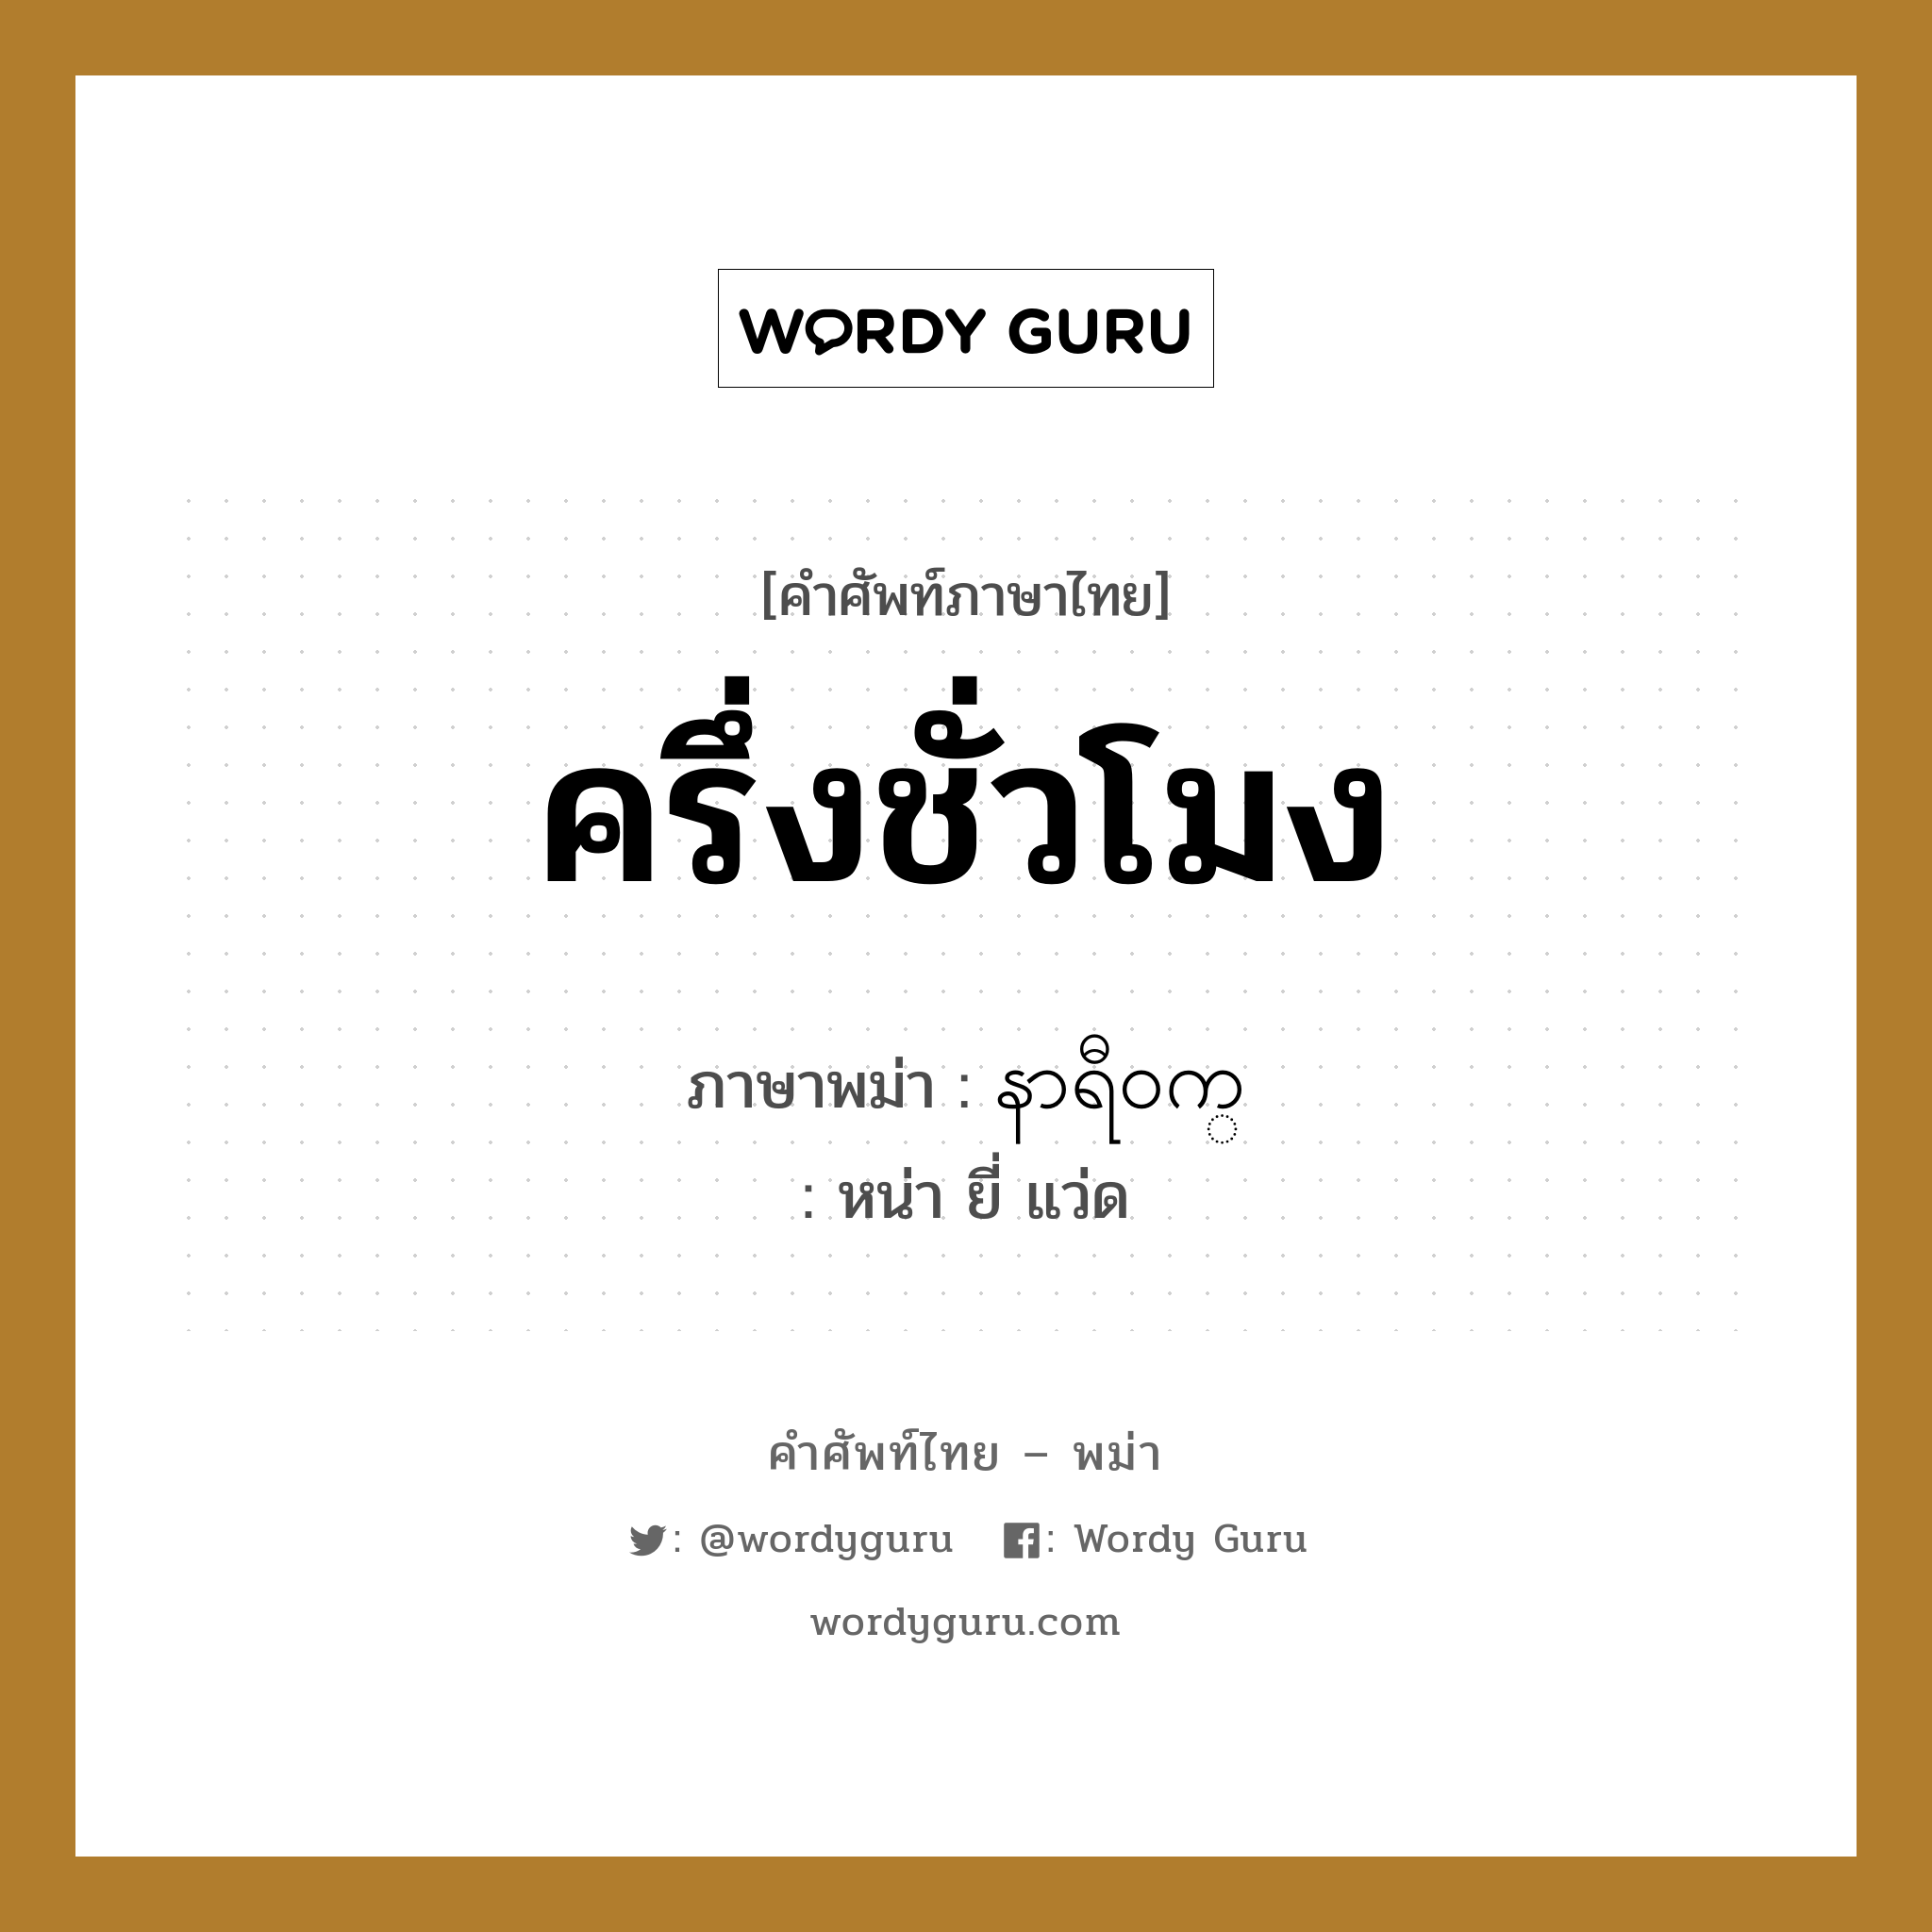 ครึ่งชั่วโมง ภาษาพม่าคืออะไร, คำศัพท์ภาษาไทย - พม่า ครึ่งชั่วโมง ภาษาพม่า နာရီ၀က္ หมวด หมวดวัน เวลา หน่า ยี่ แว่ด หมวด หมวดวัน เวลา